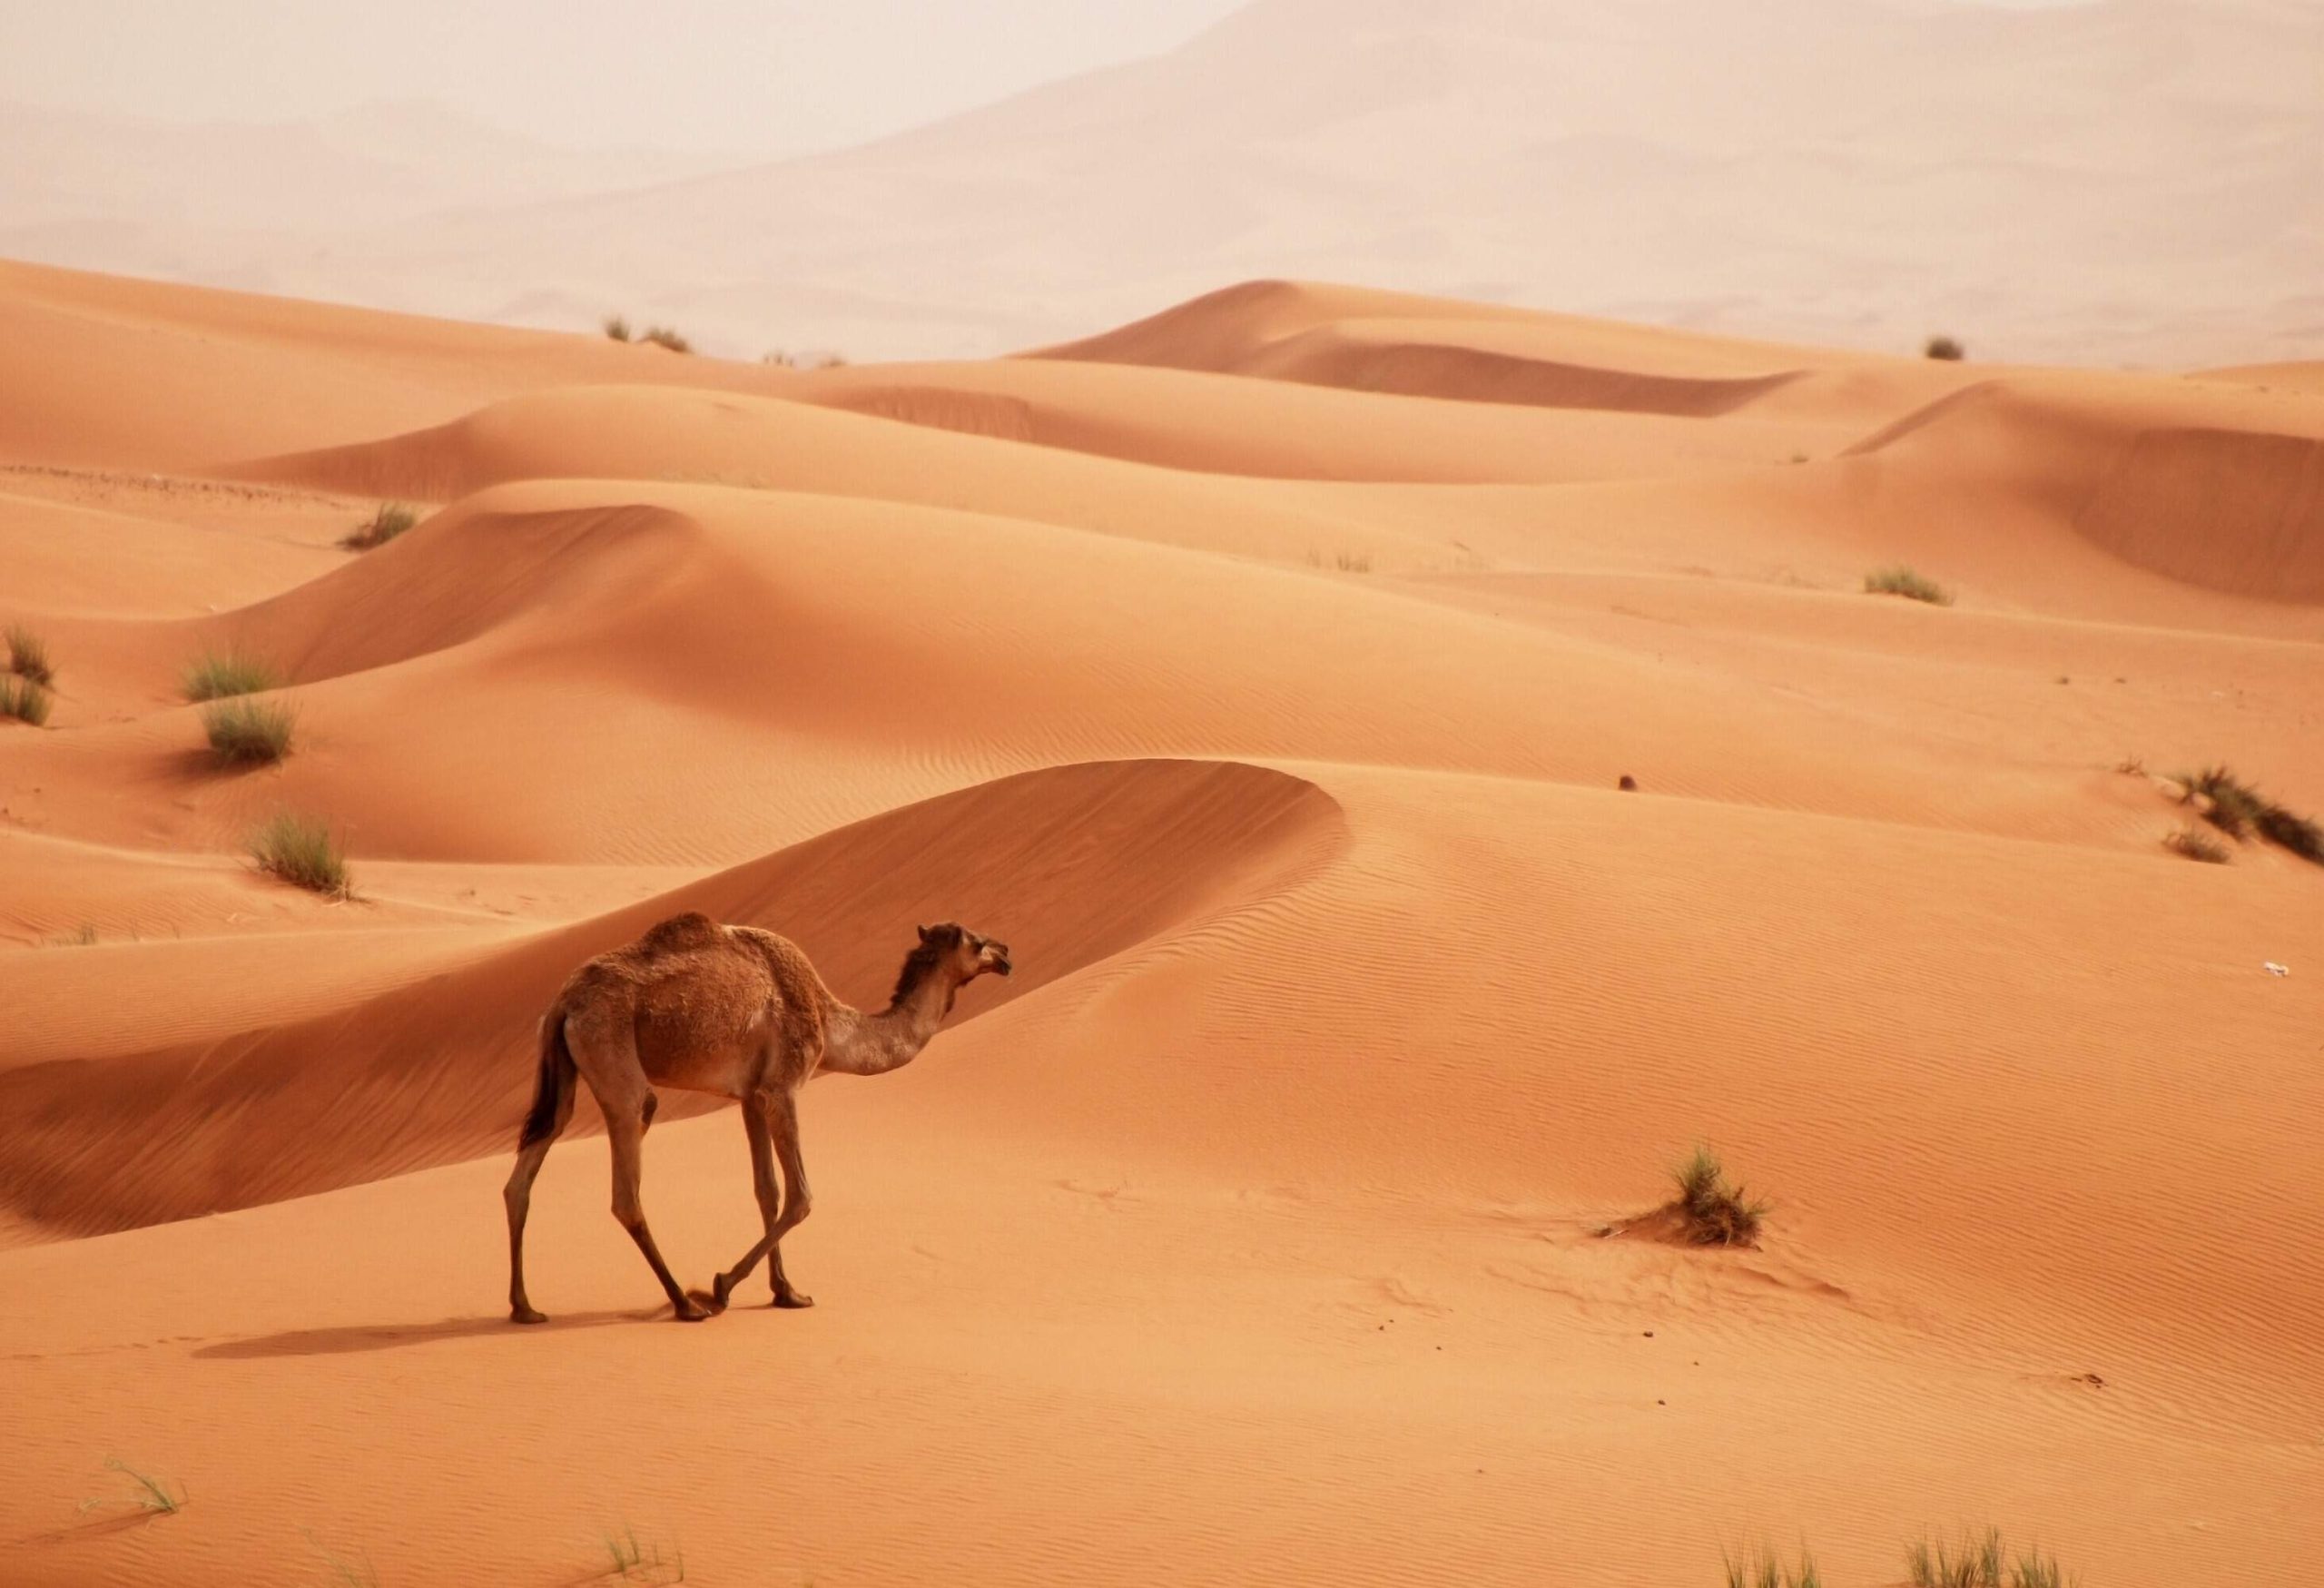 A camel walks through the desert sand dunes.